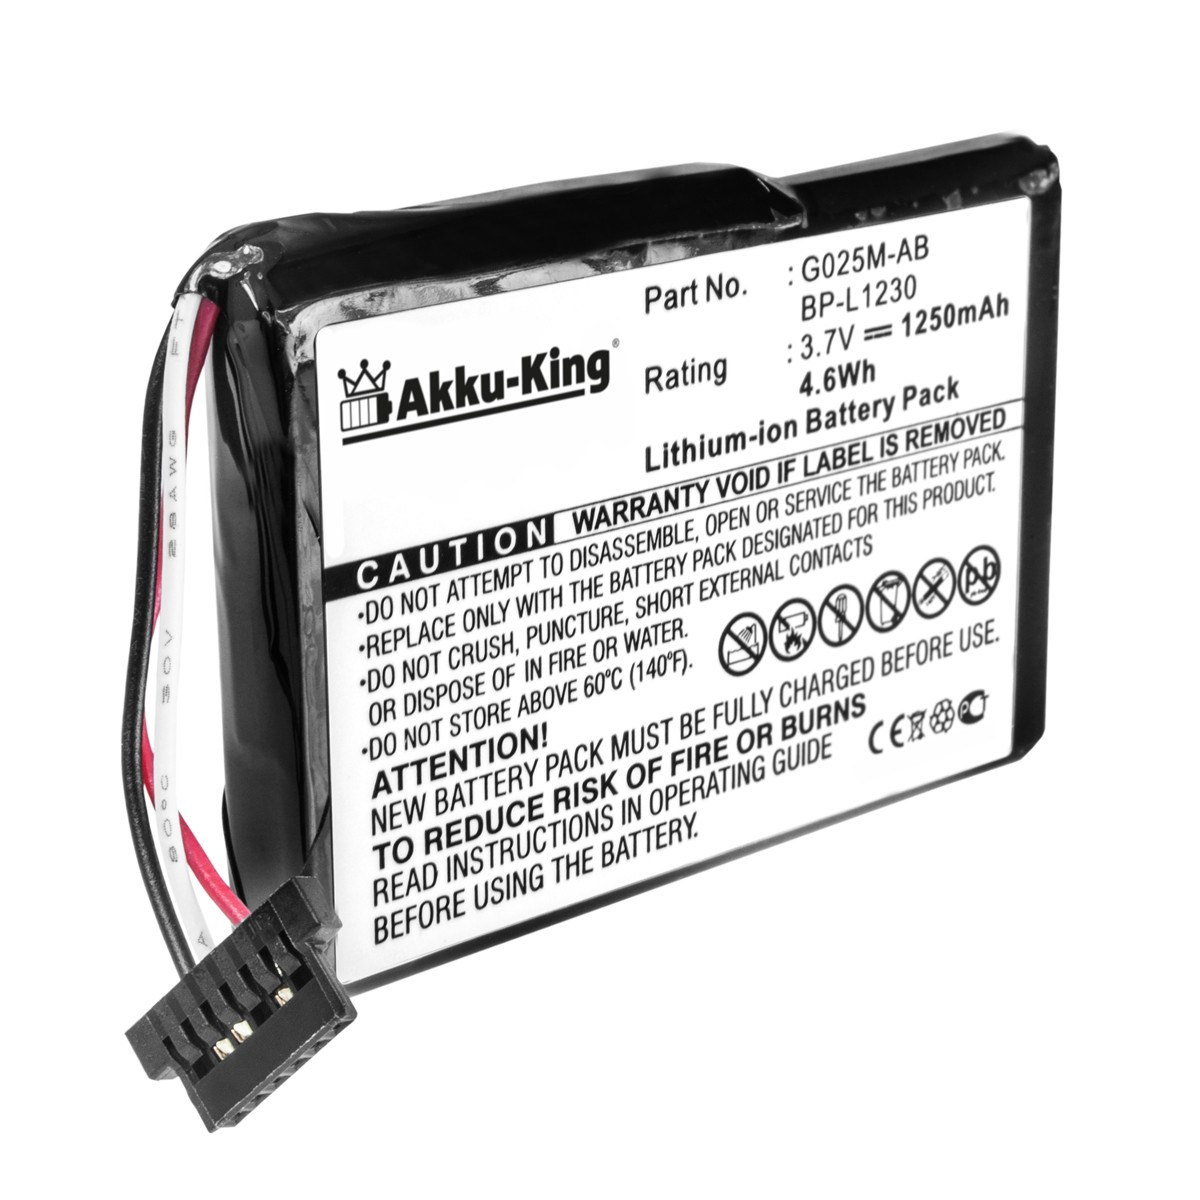 Geräte-Akku, G025A-AB kompatibel Akku mit Volt, 3.7 1250mAh Li-Ion AKKU-KING Becker